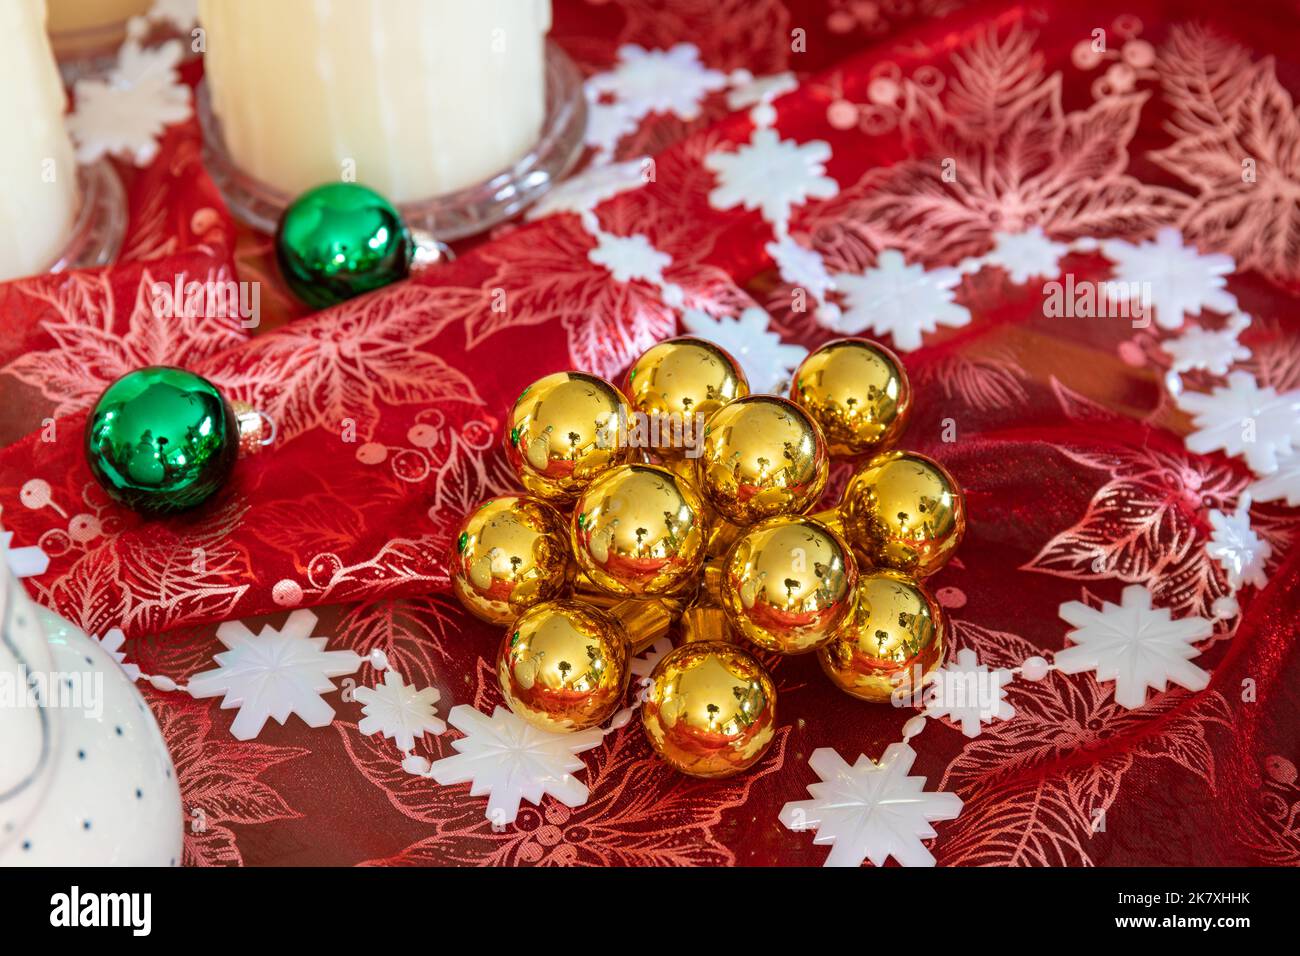 Goldene und grüne runde Weihnachtsornamente auf rotem schimmerigen Tuch mit weißer Schneeflocke Girlande auf dem Tisch Stockfoto